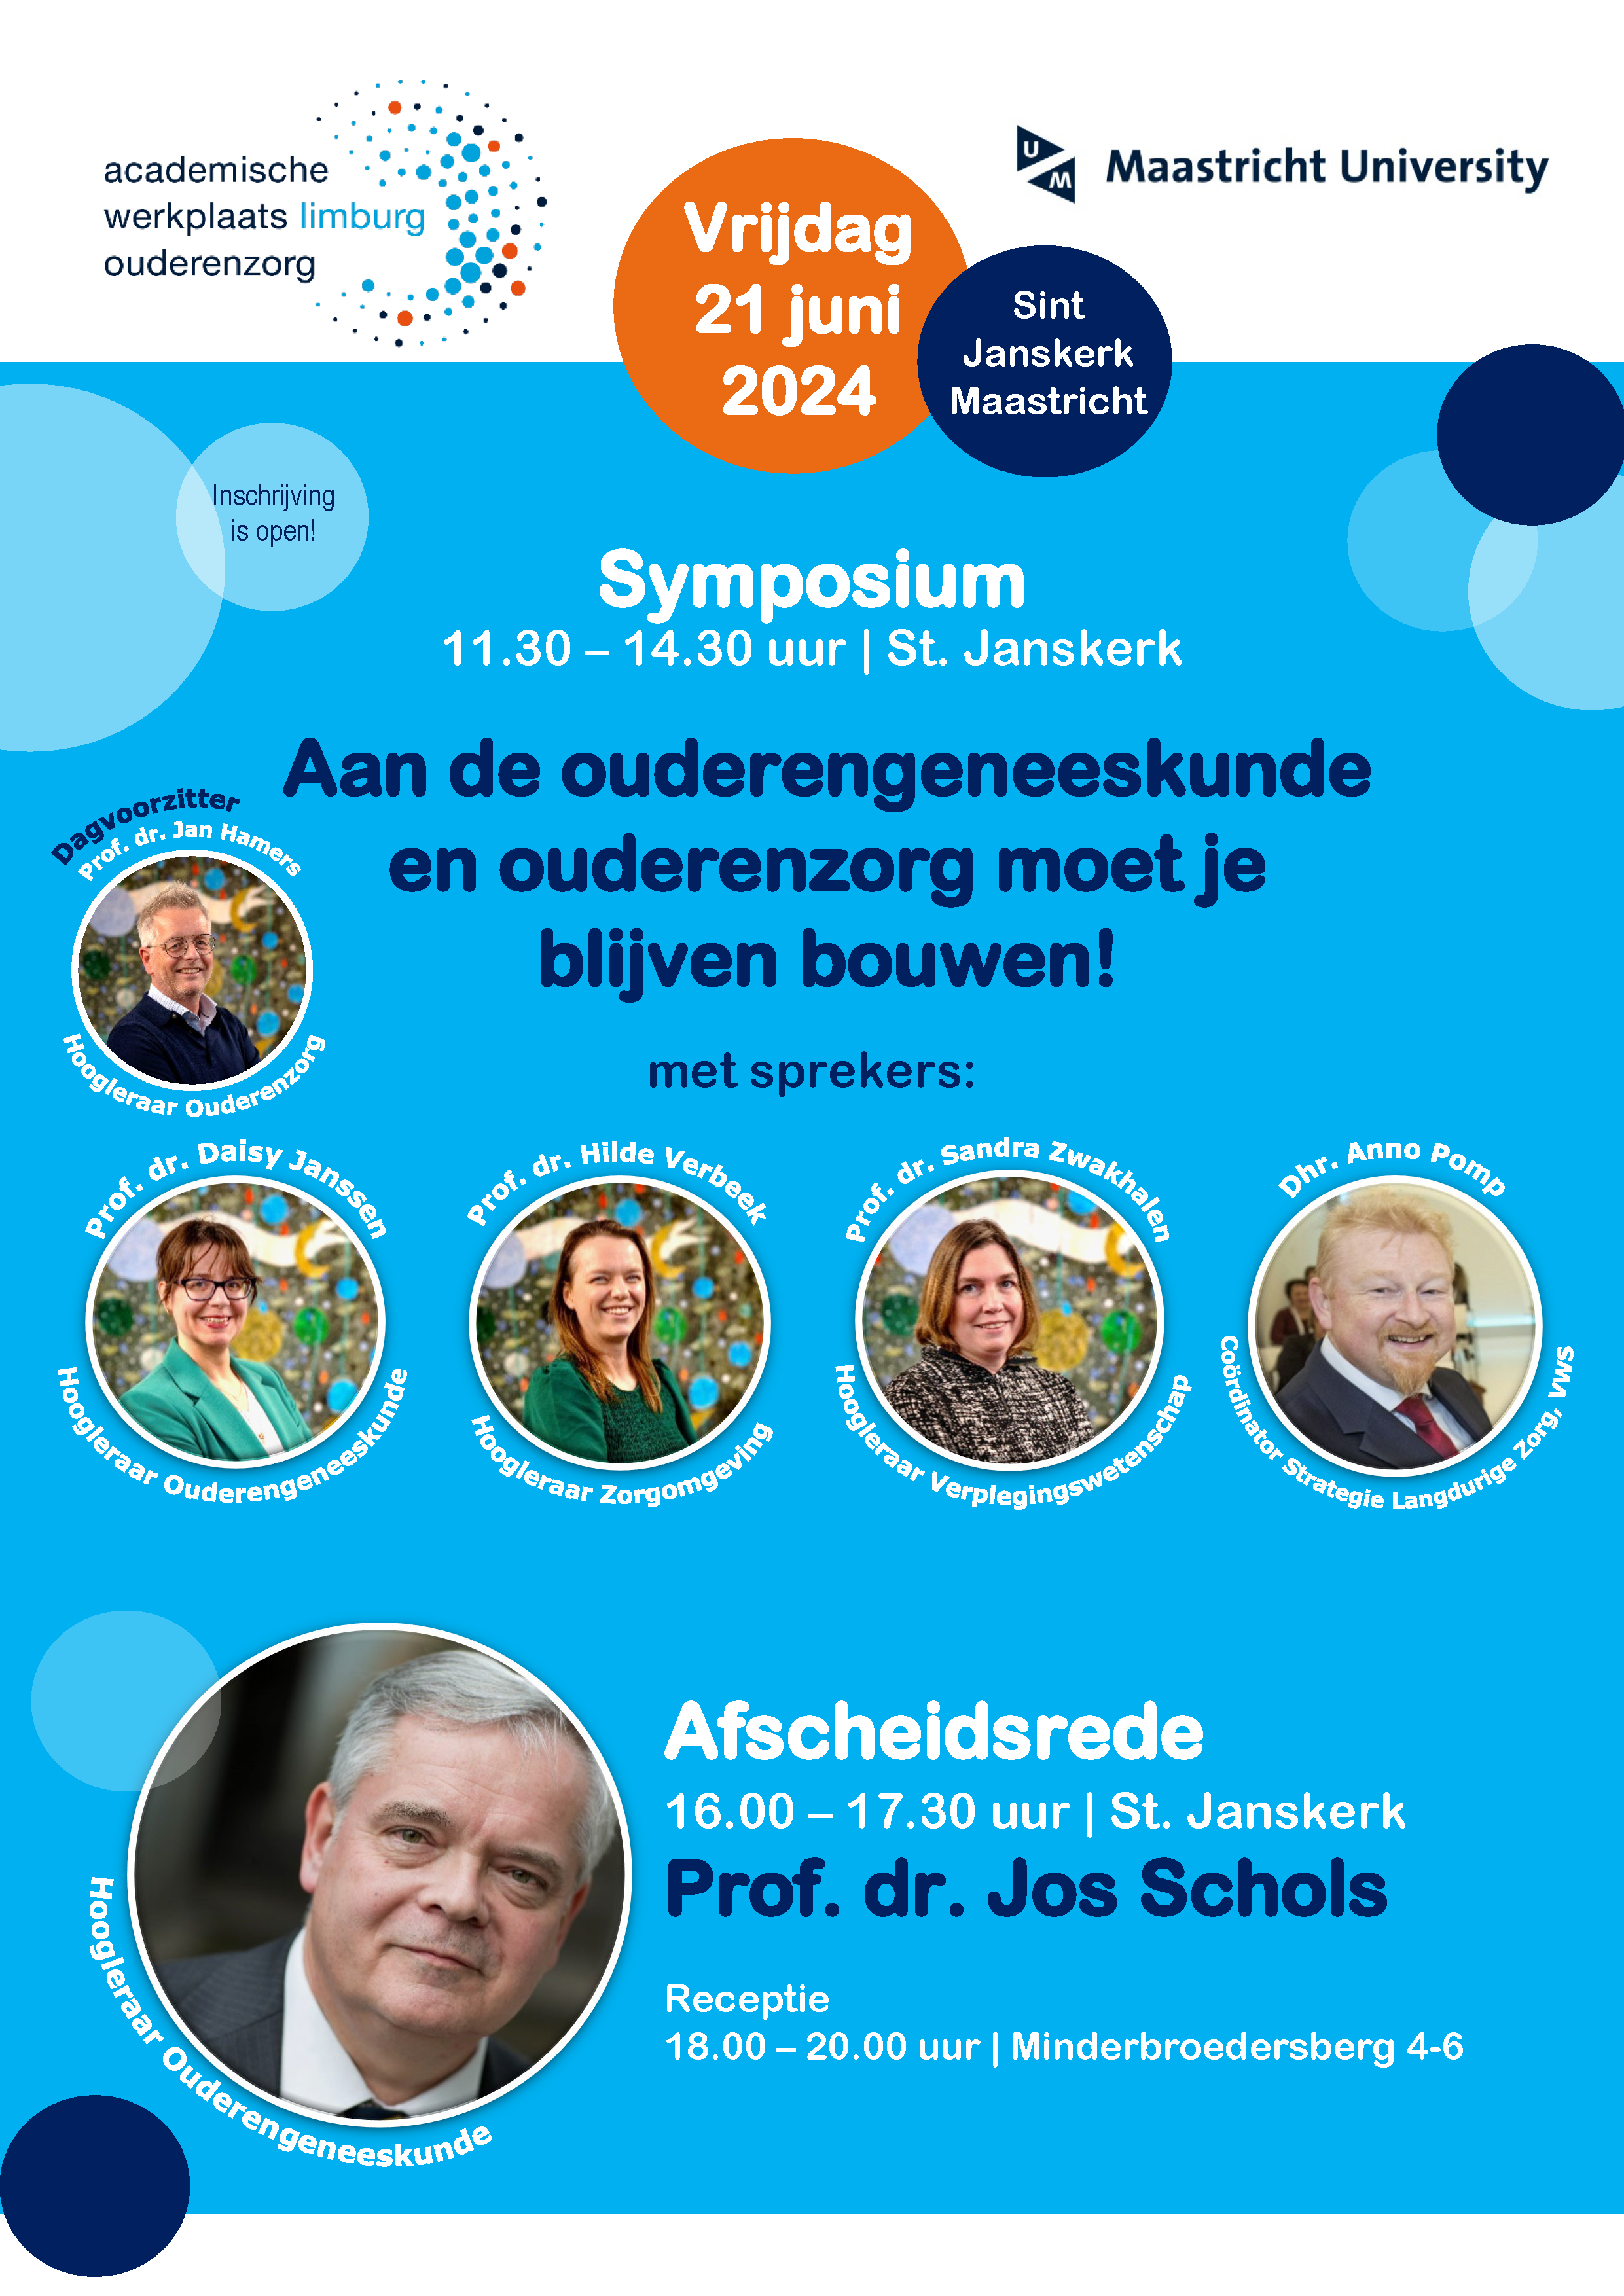 Afscheidssymposium prof. dr. Jos Schols